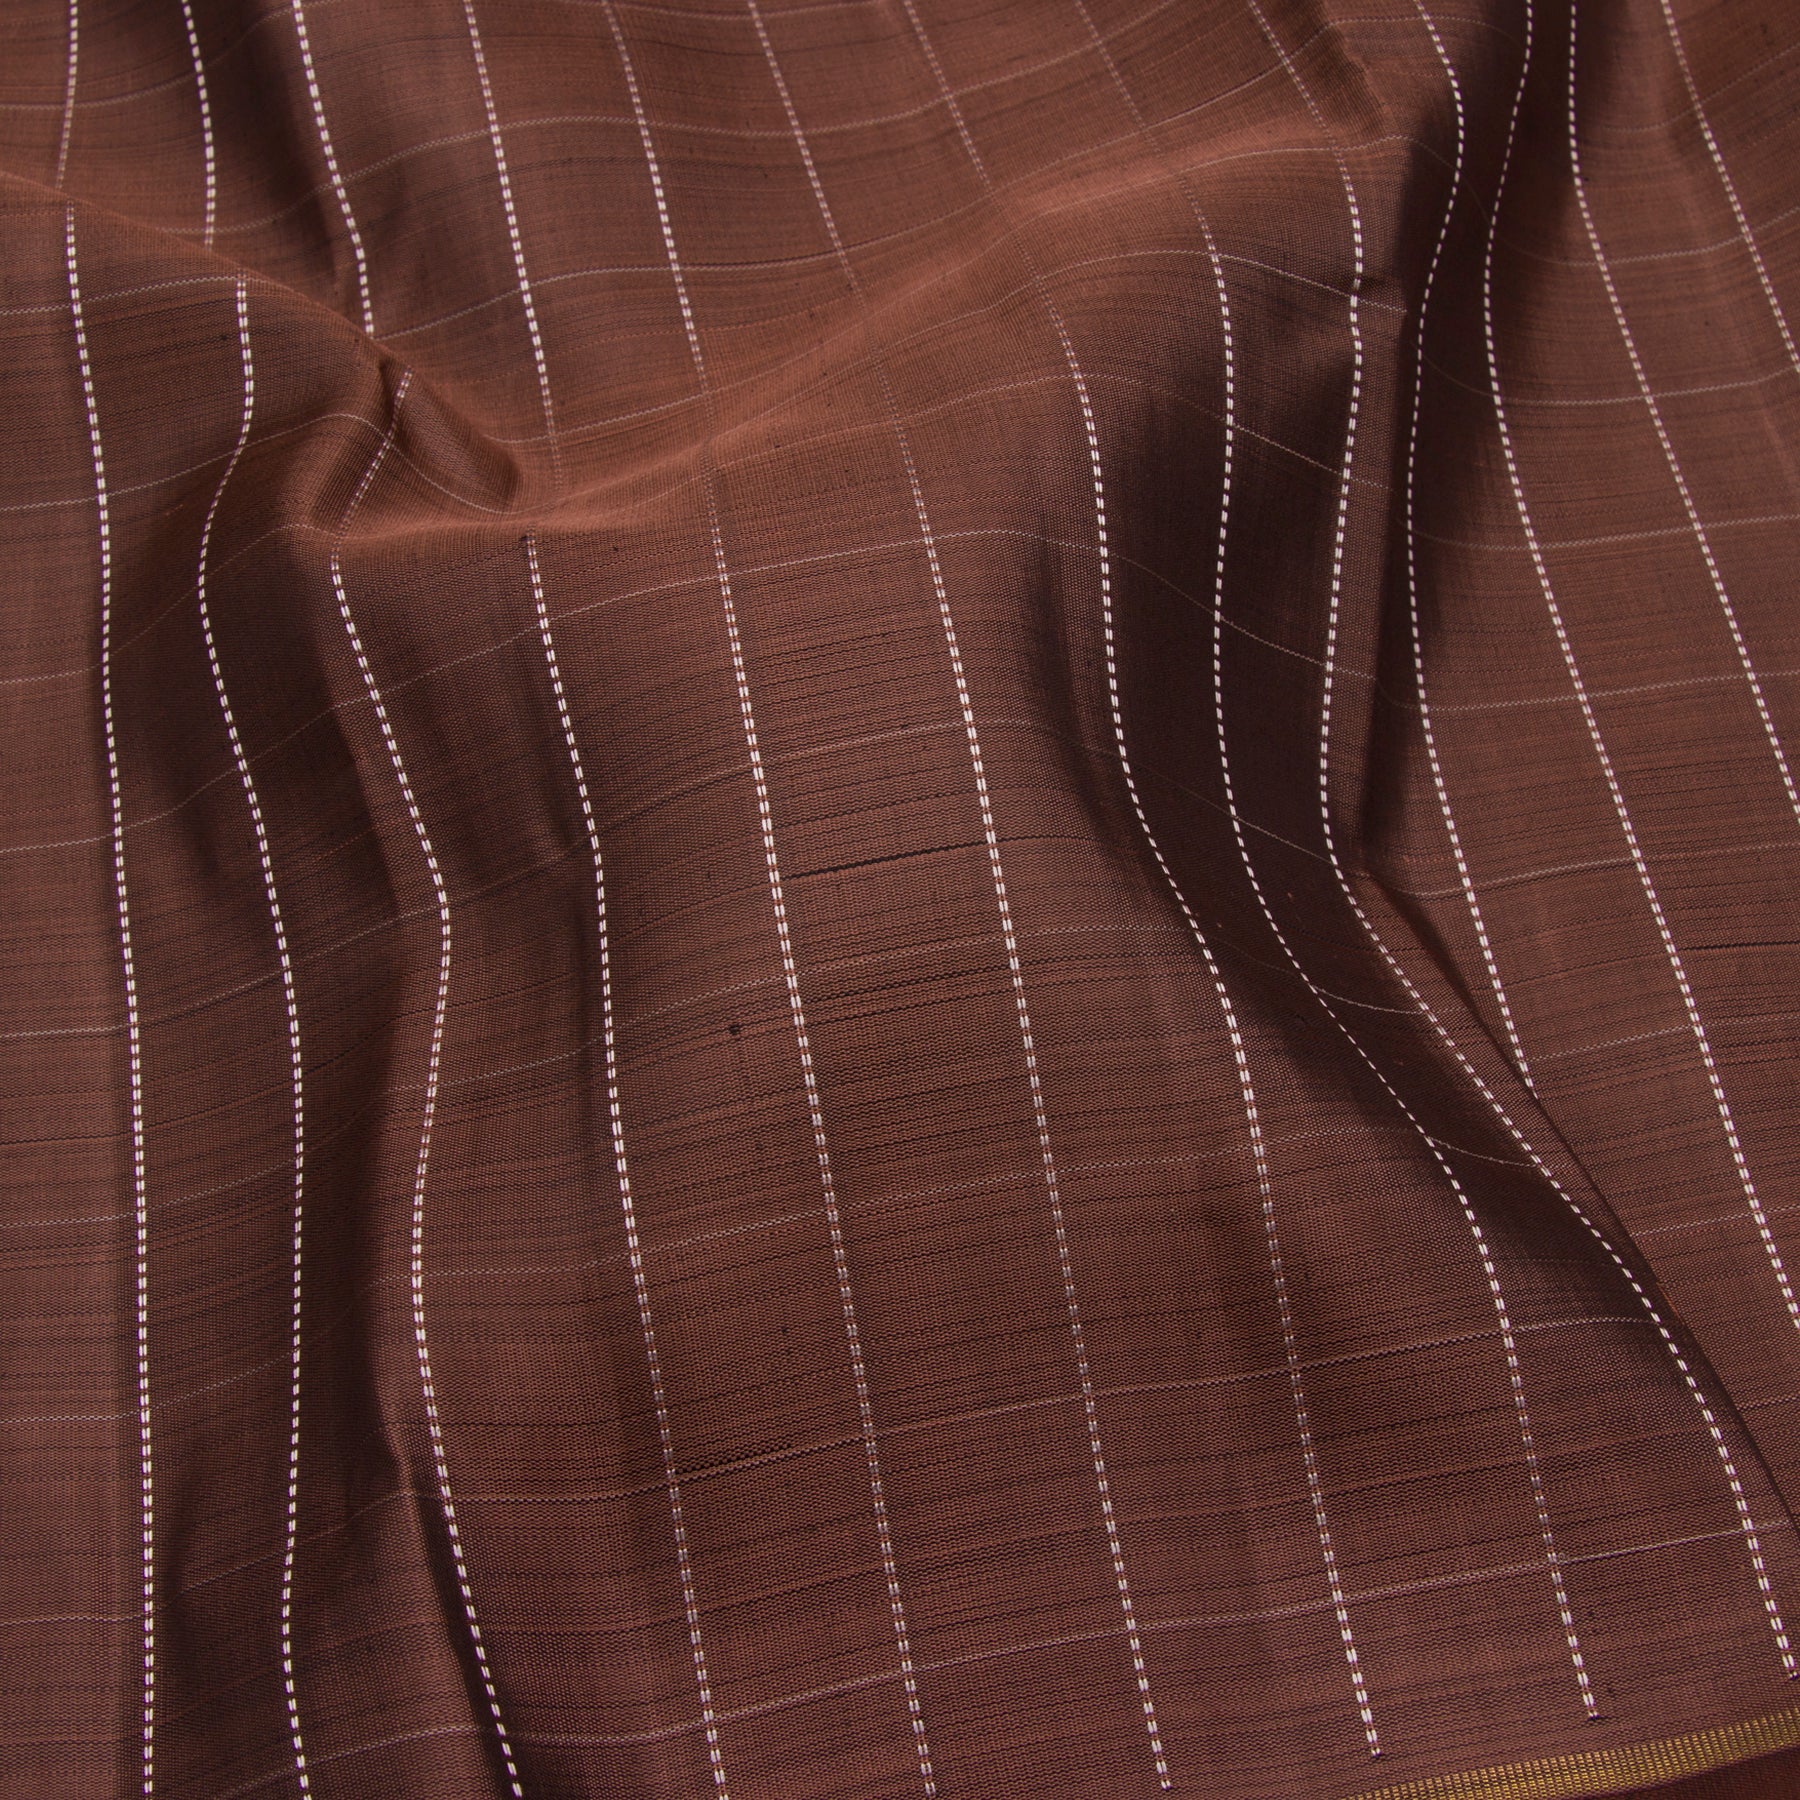 Kanakavalli Kanjivaram Silk Sari 23-599-HS001-12548 - Fabric View